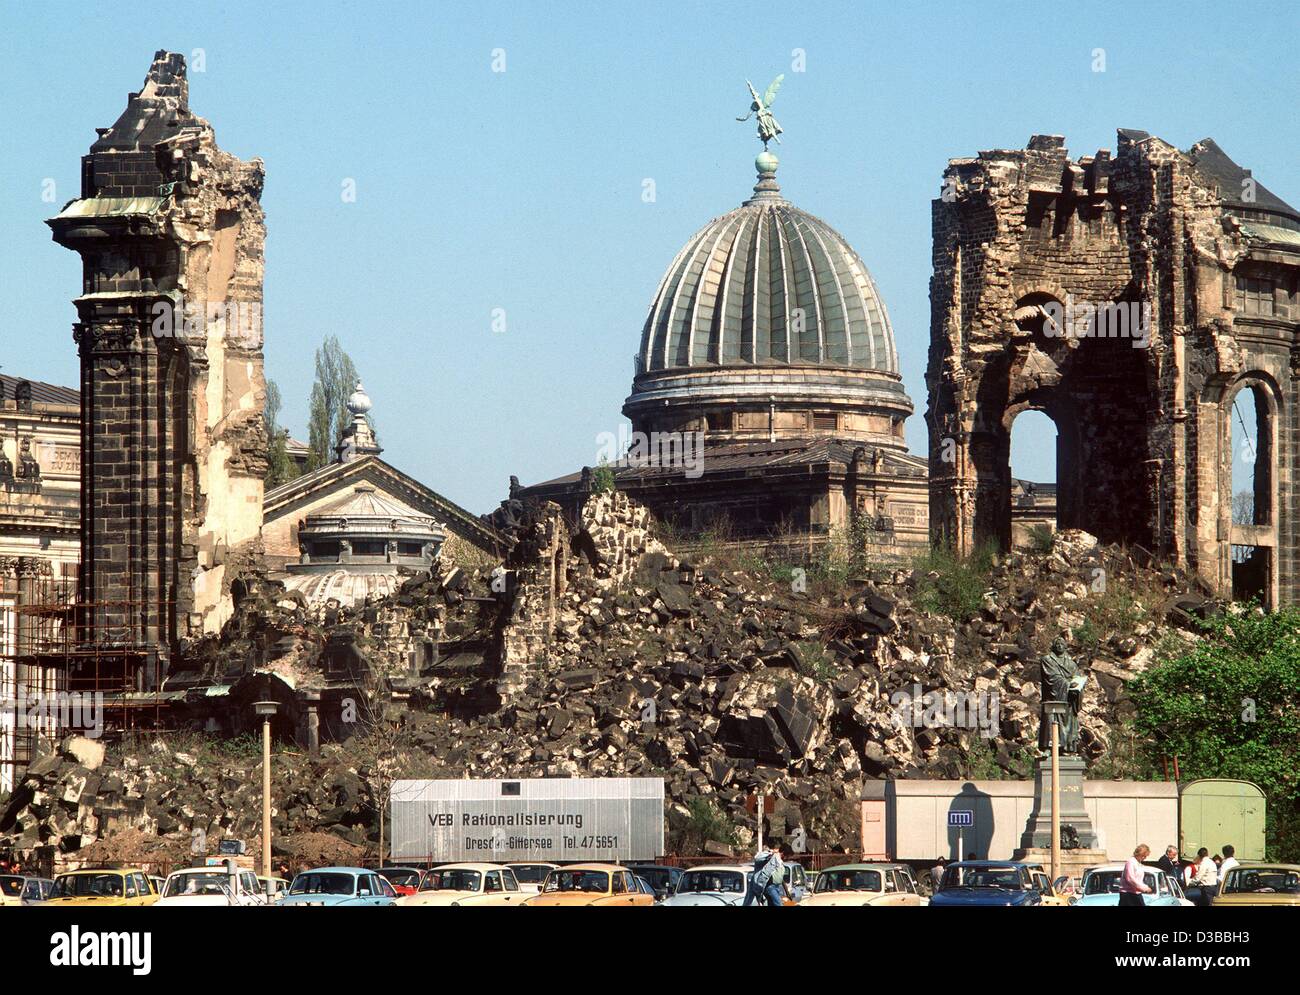 (Dpa-Dateien) - ein Blick auf die Ruinen der zerstörten Frauenkirche in Dresden, Ostdeutschland, 1990. Die Kirche, ein Meisterwerk der barocken Architektur, wurde im Februar 1945 zerstört. Seine Ruinen als Mahnmal des Krieges diente, bis in den frühen 90er Jahren die Entscheidung getroffen wurde, um die Frauenkir wieder aufzubauen Stockfoto